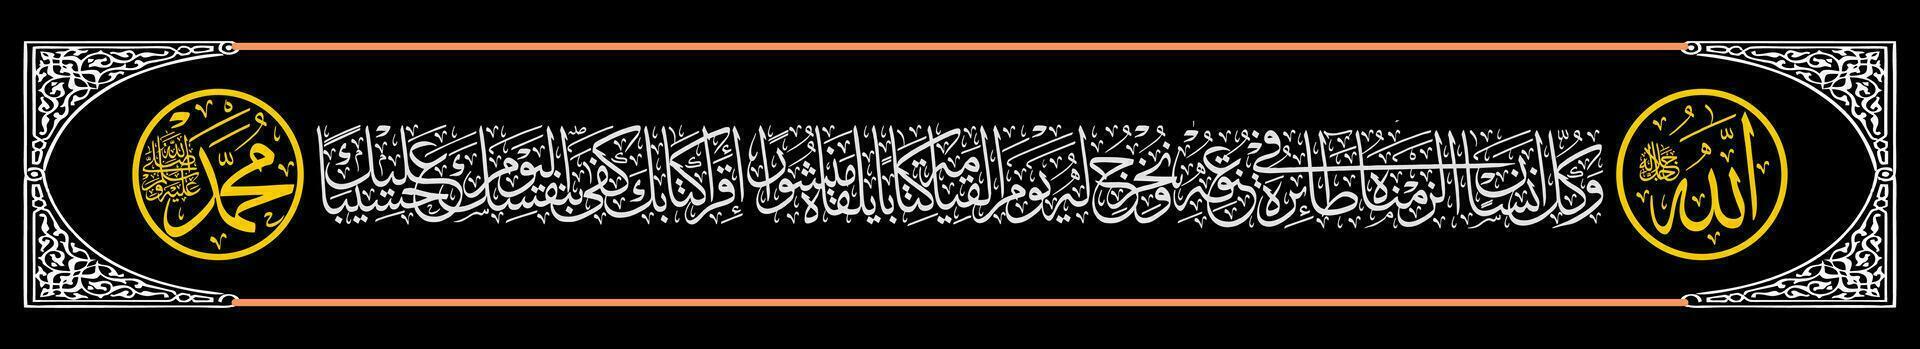 caligrafia Thuluth al qur'an Surat al isra 13 que significa e cada humano ser nós ter colocada uma registro do dele atos por aí dele pescoço. e em a dia do ressurreição nós vetor